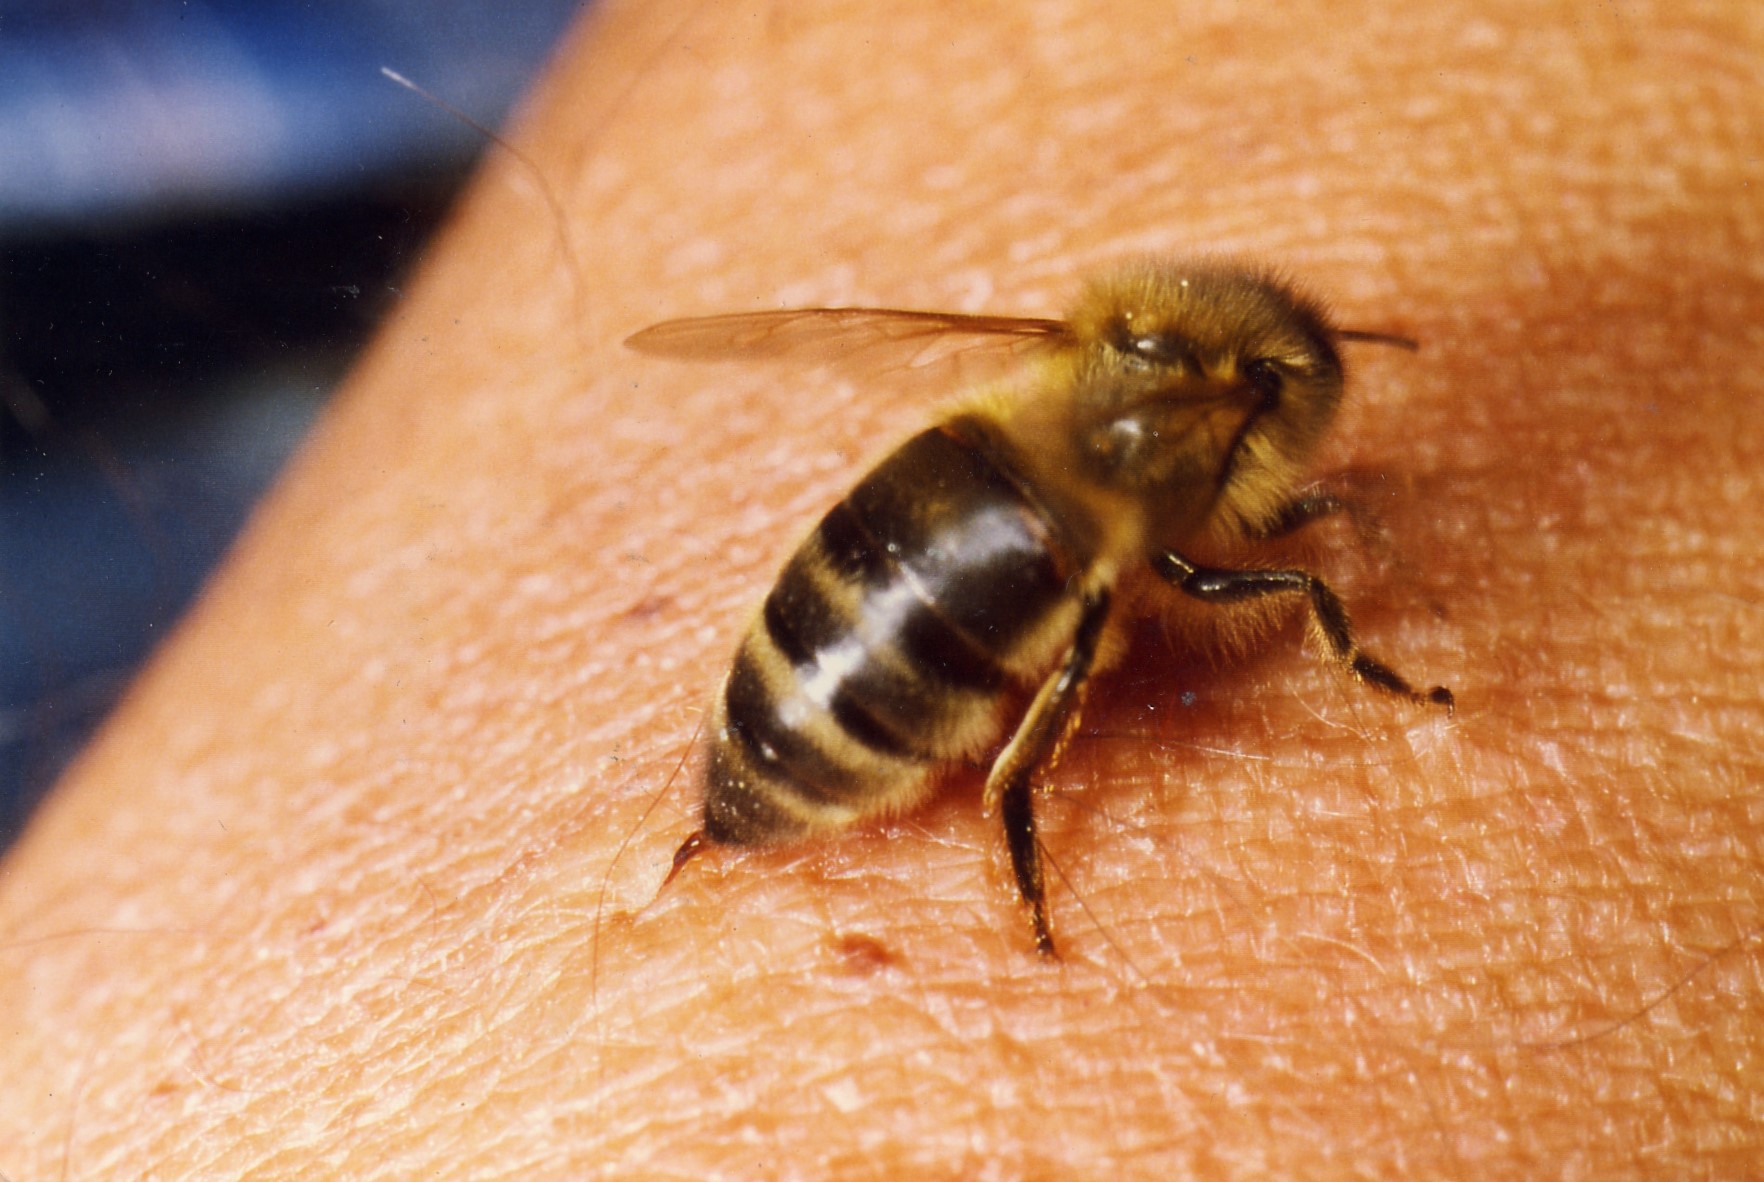 Comment dois-je réagir à une piqûre d’abeille